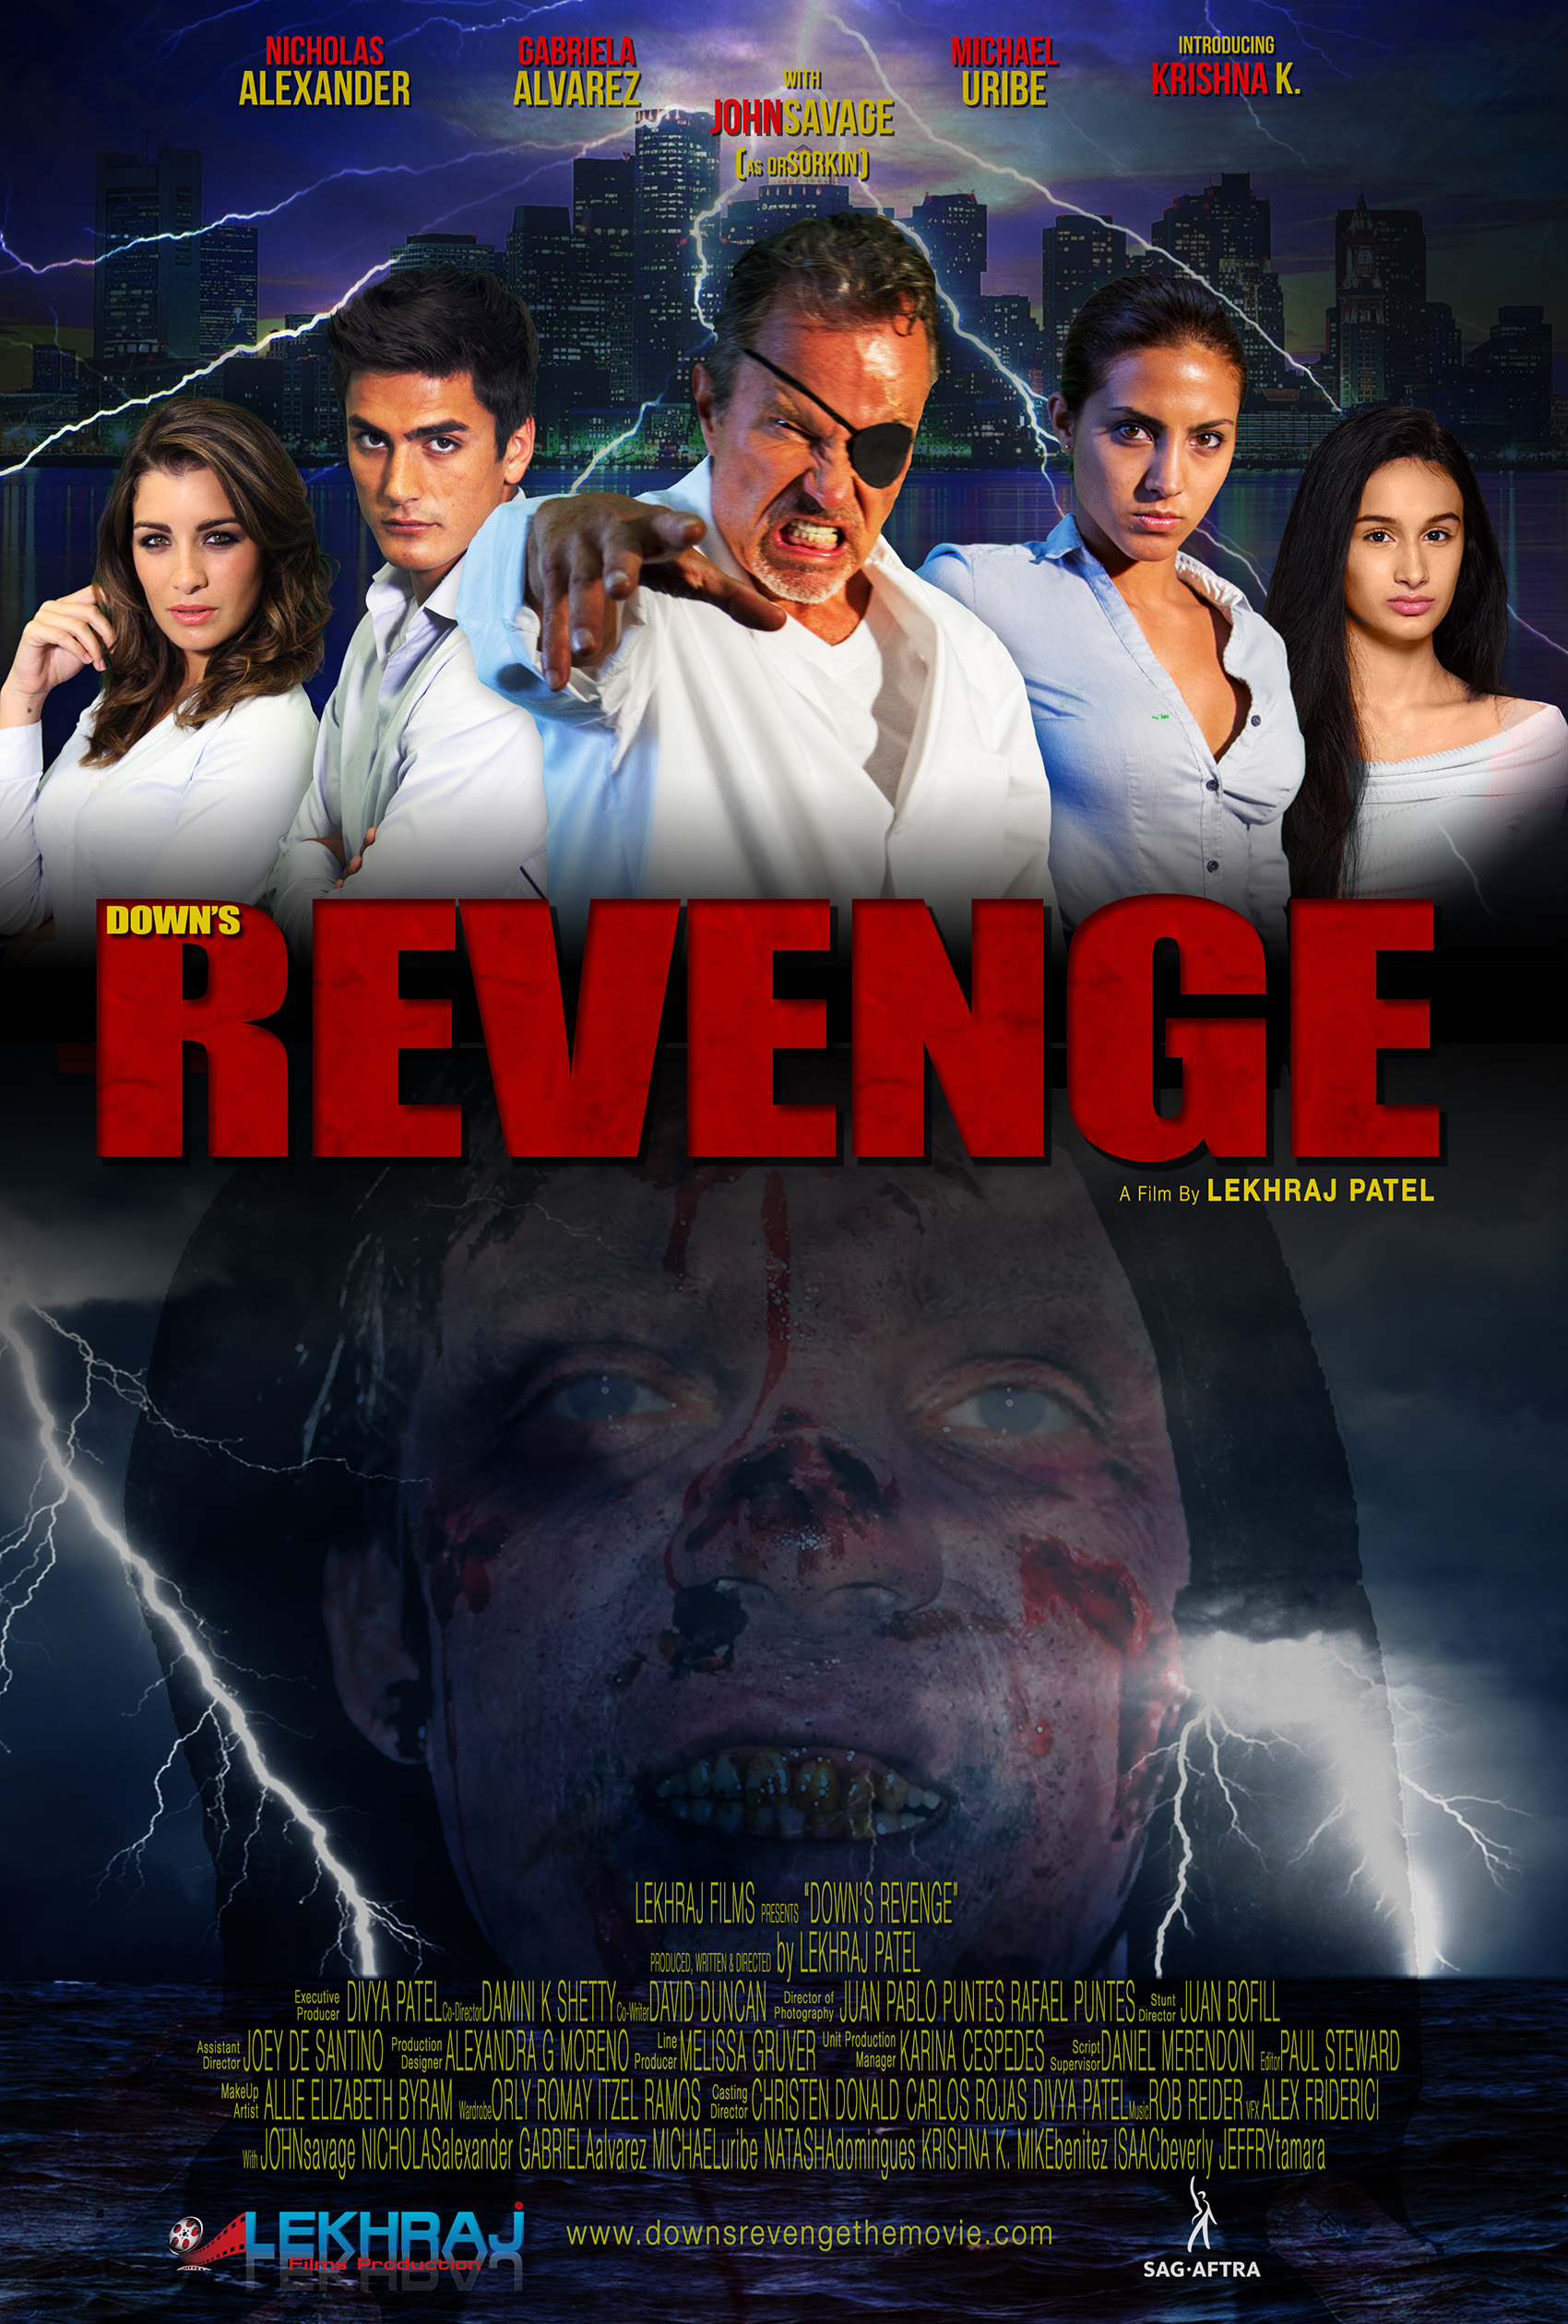 Down's Revenge (2019) постер